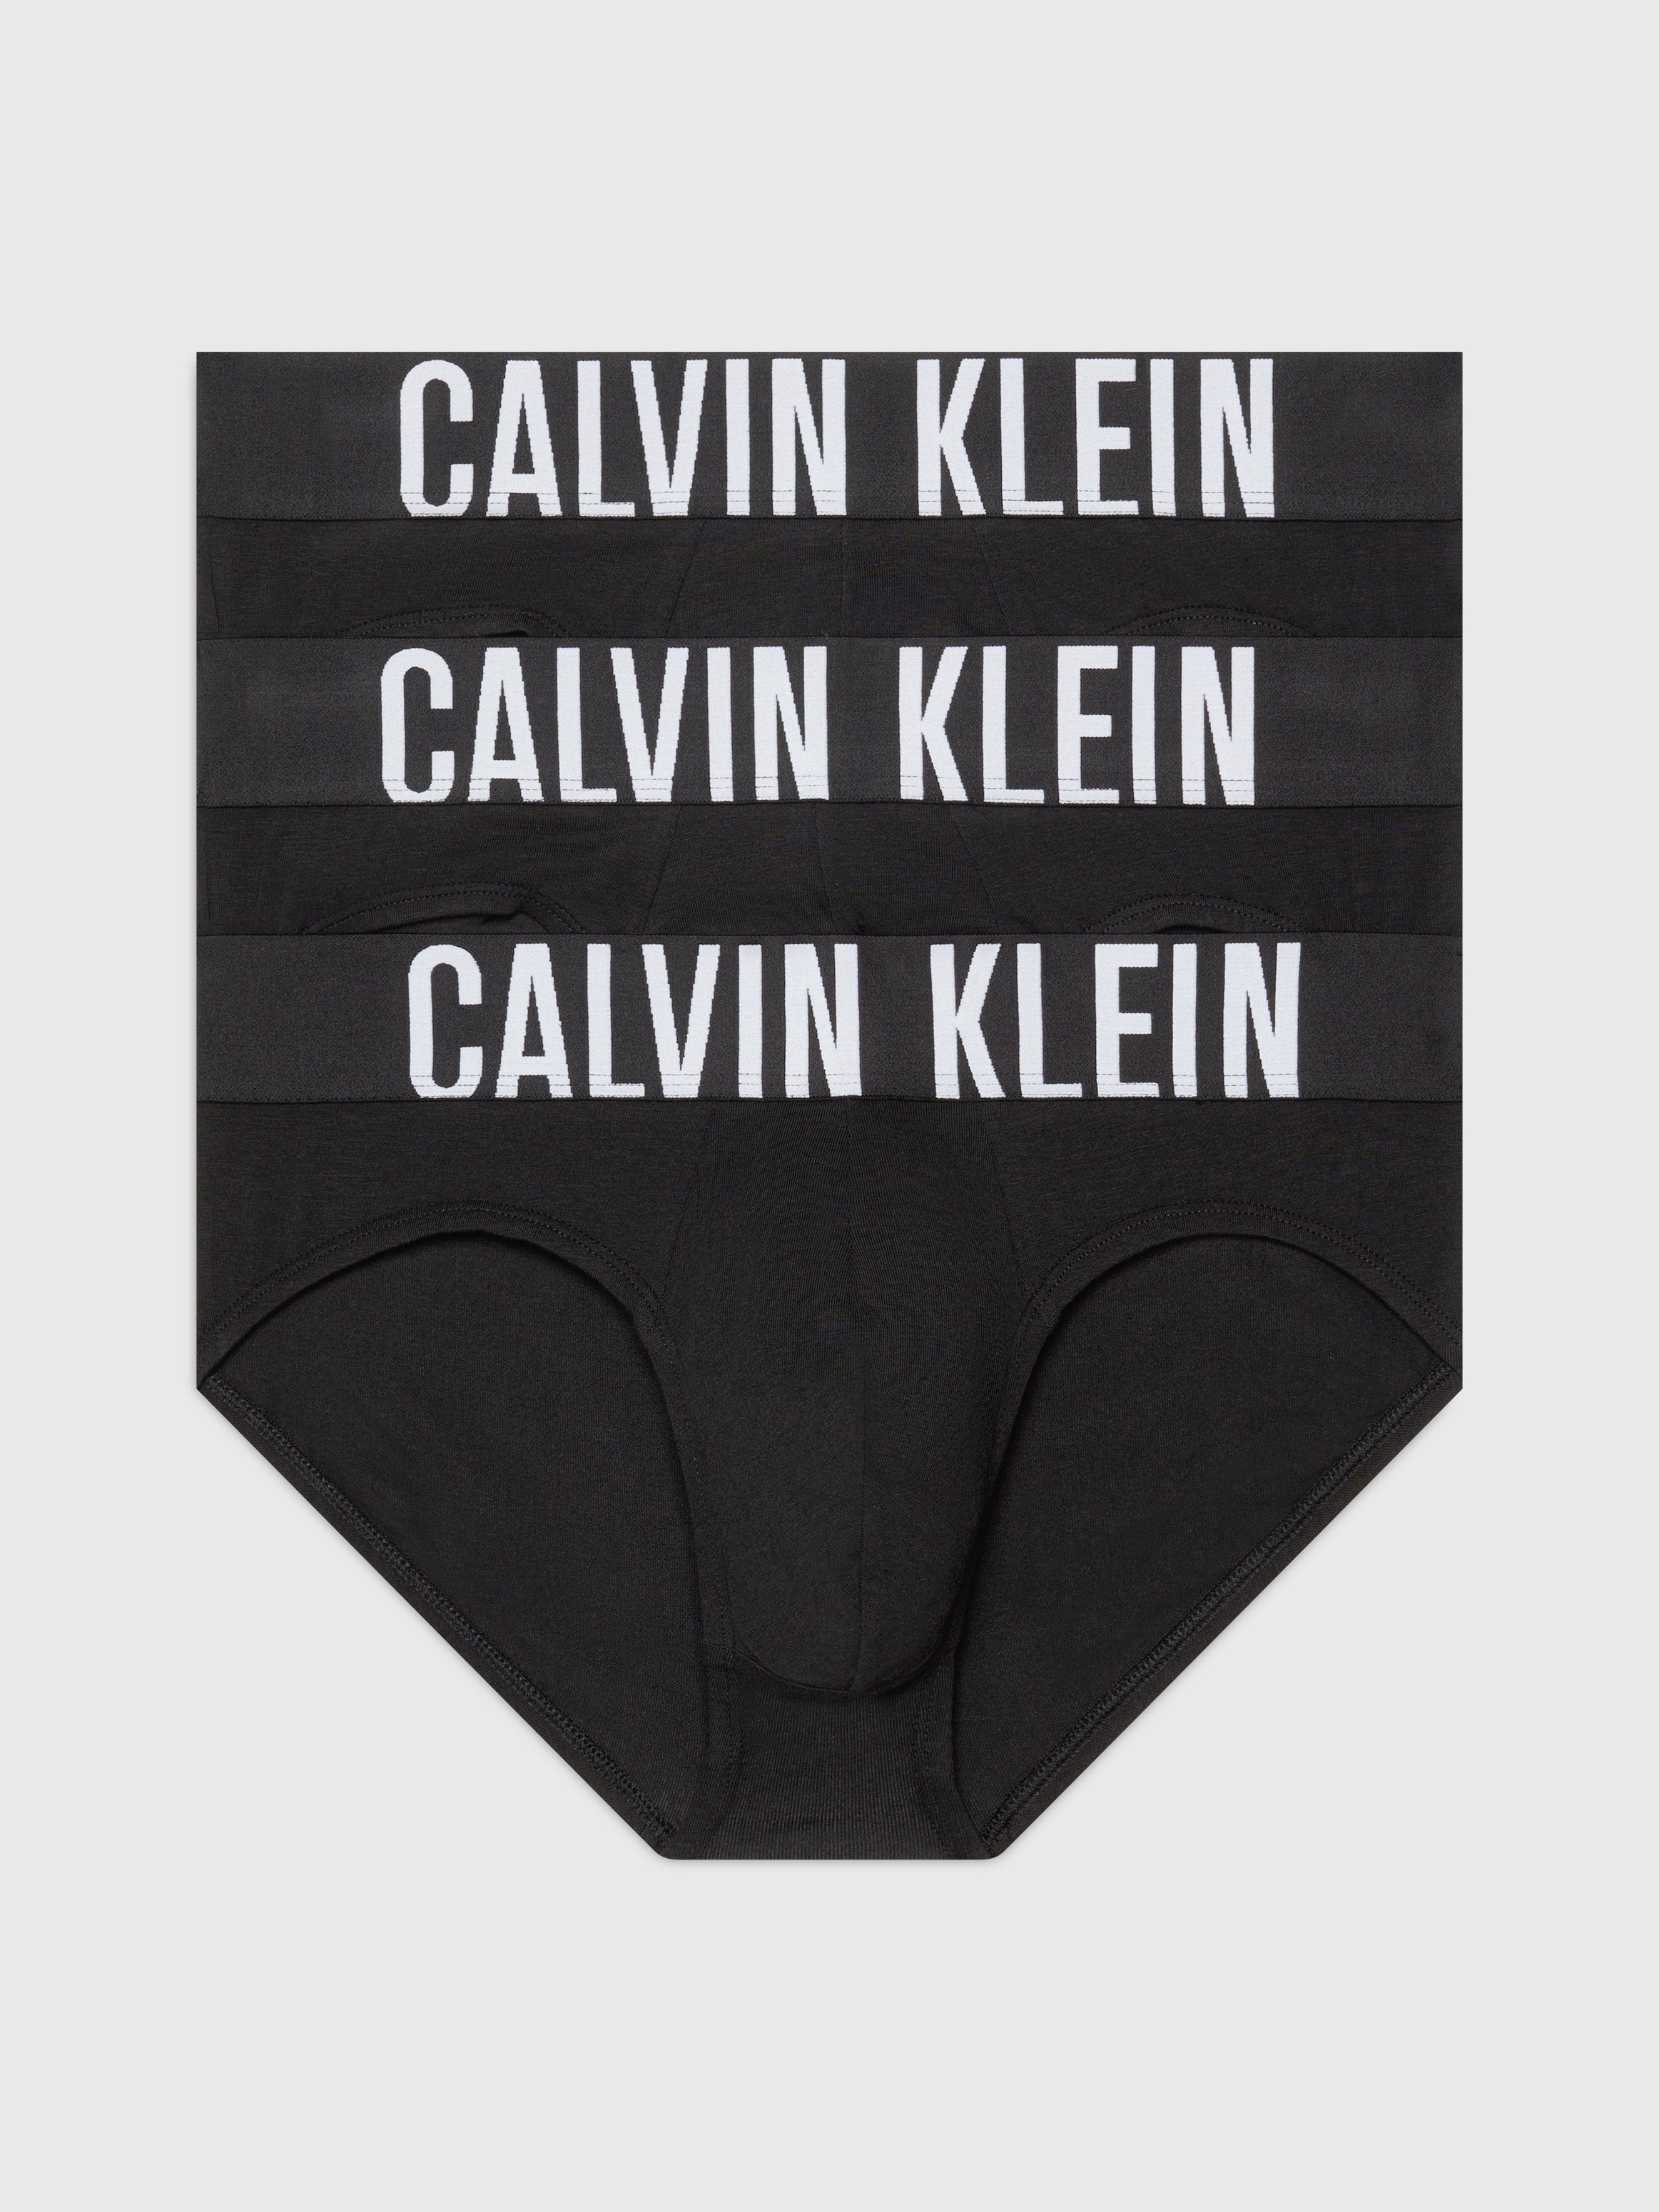 Calvin Klein Mannen Briefs 3-Pack Lente Zomer Collectie Black Heren